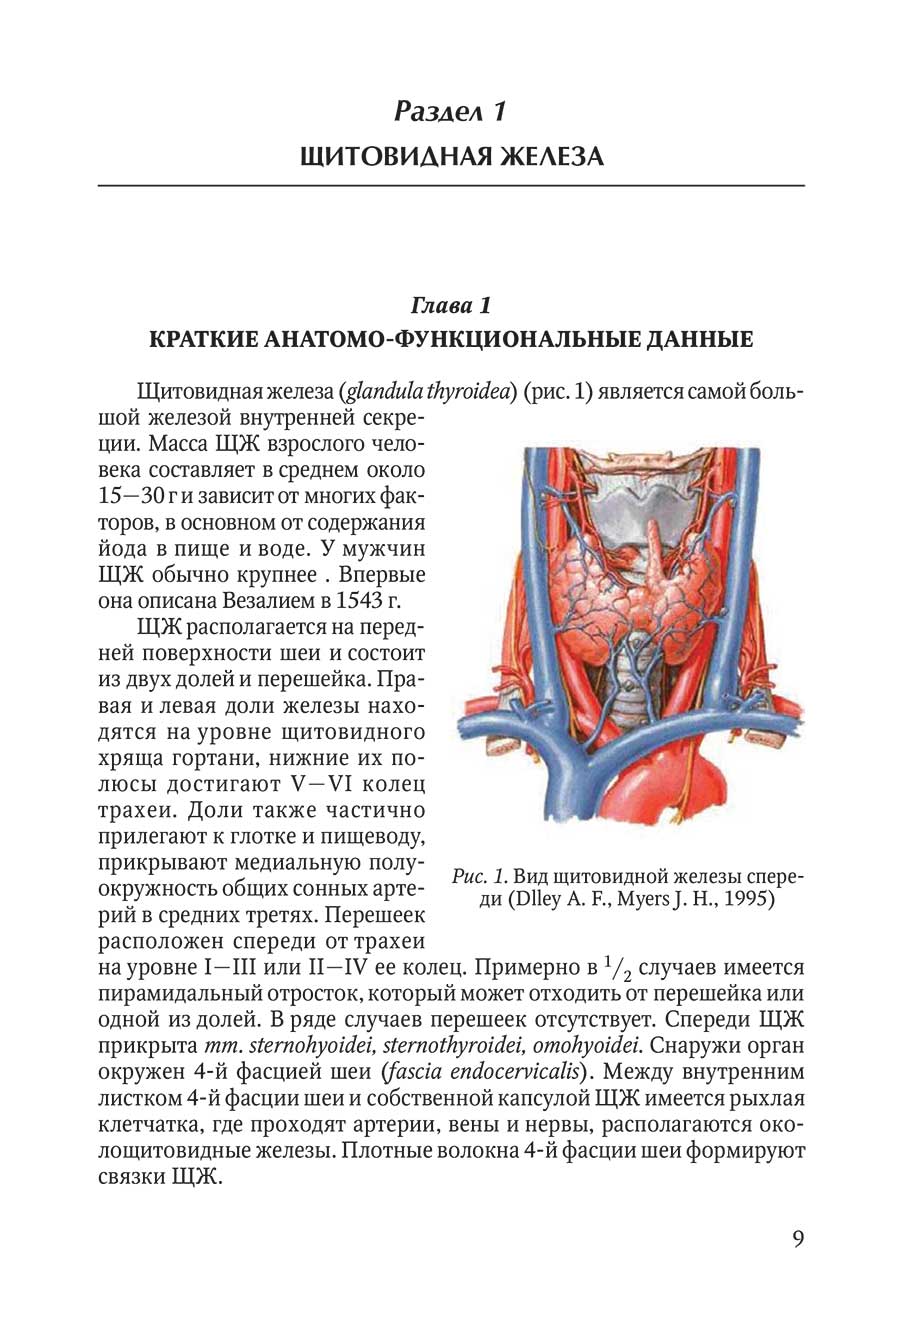 Пример страницы из книги "Болезни щитовидной и околощитовидных желез: эмбриология, анатомия, этиопатогенез, диагностика, лечение"